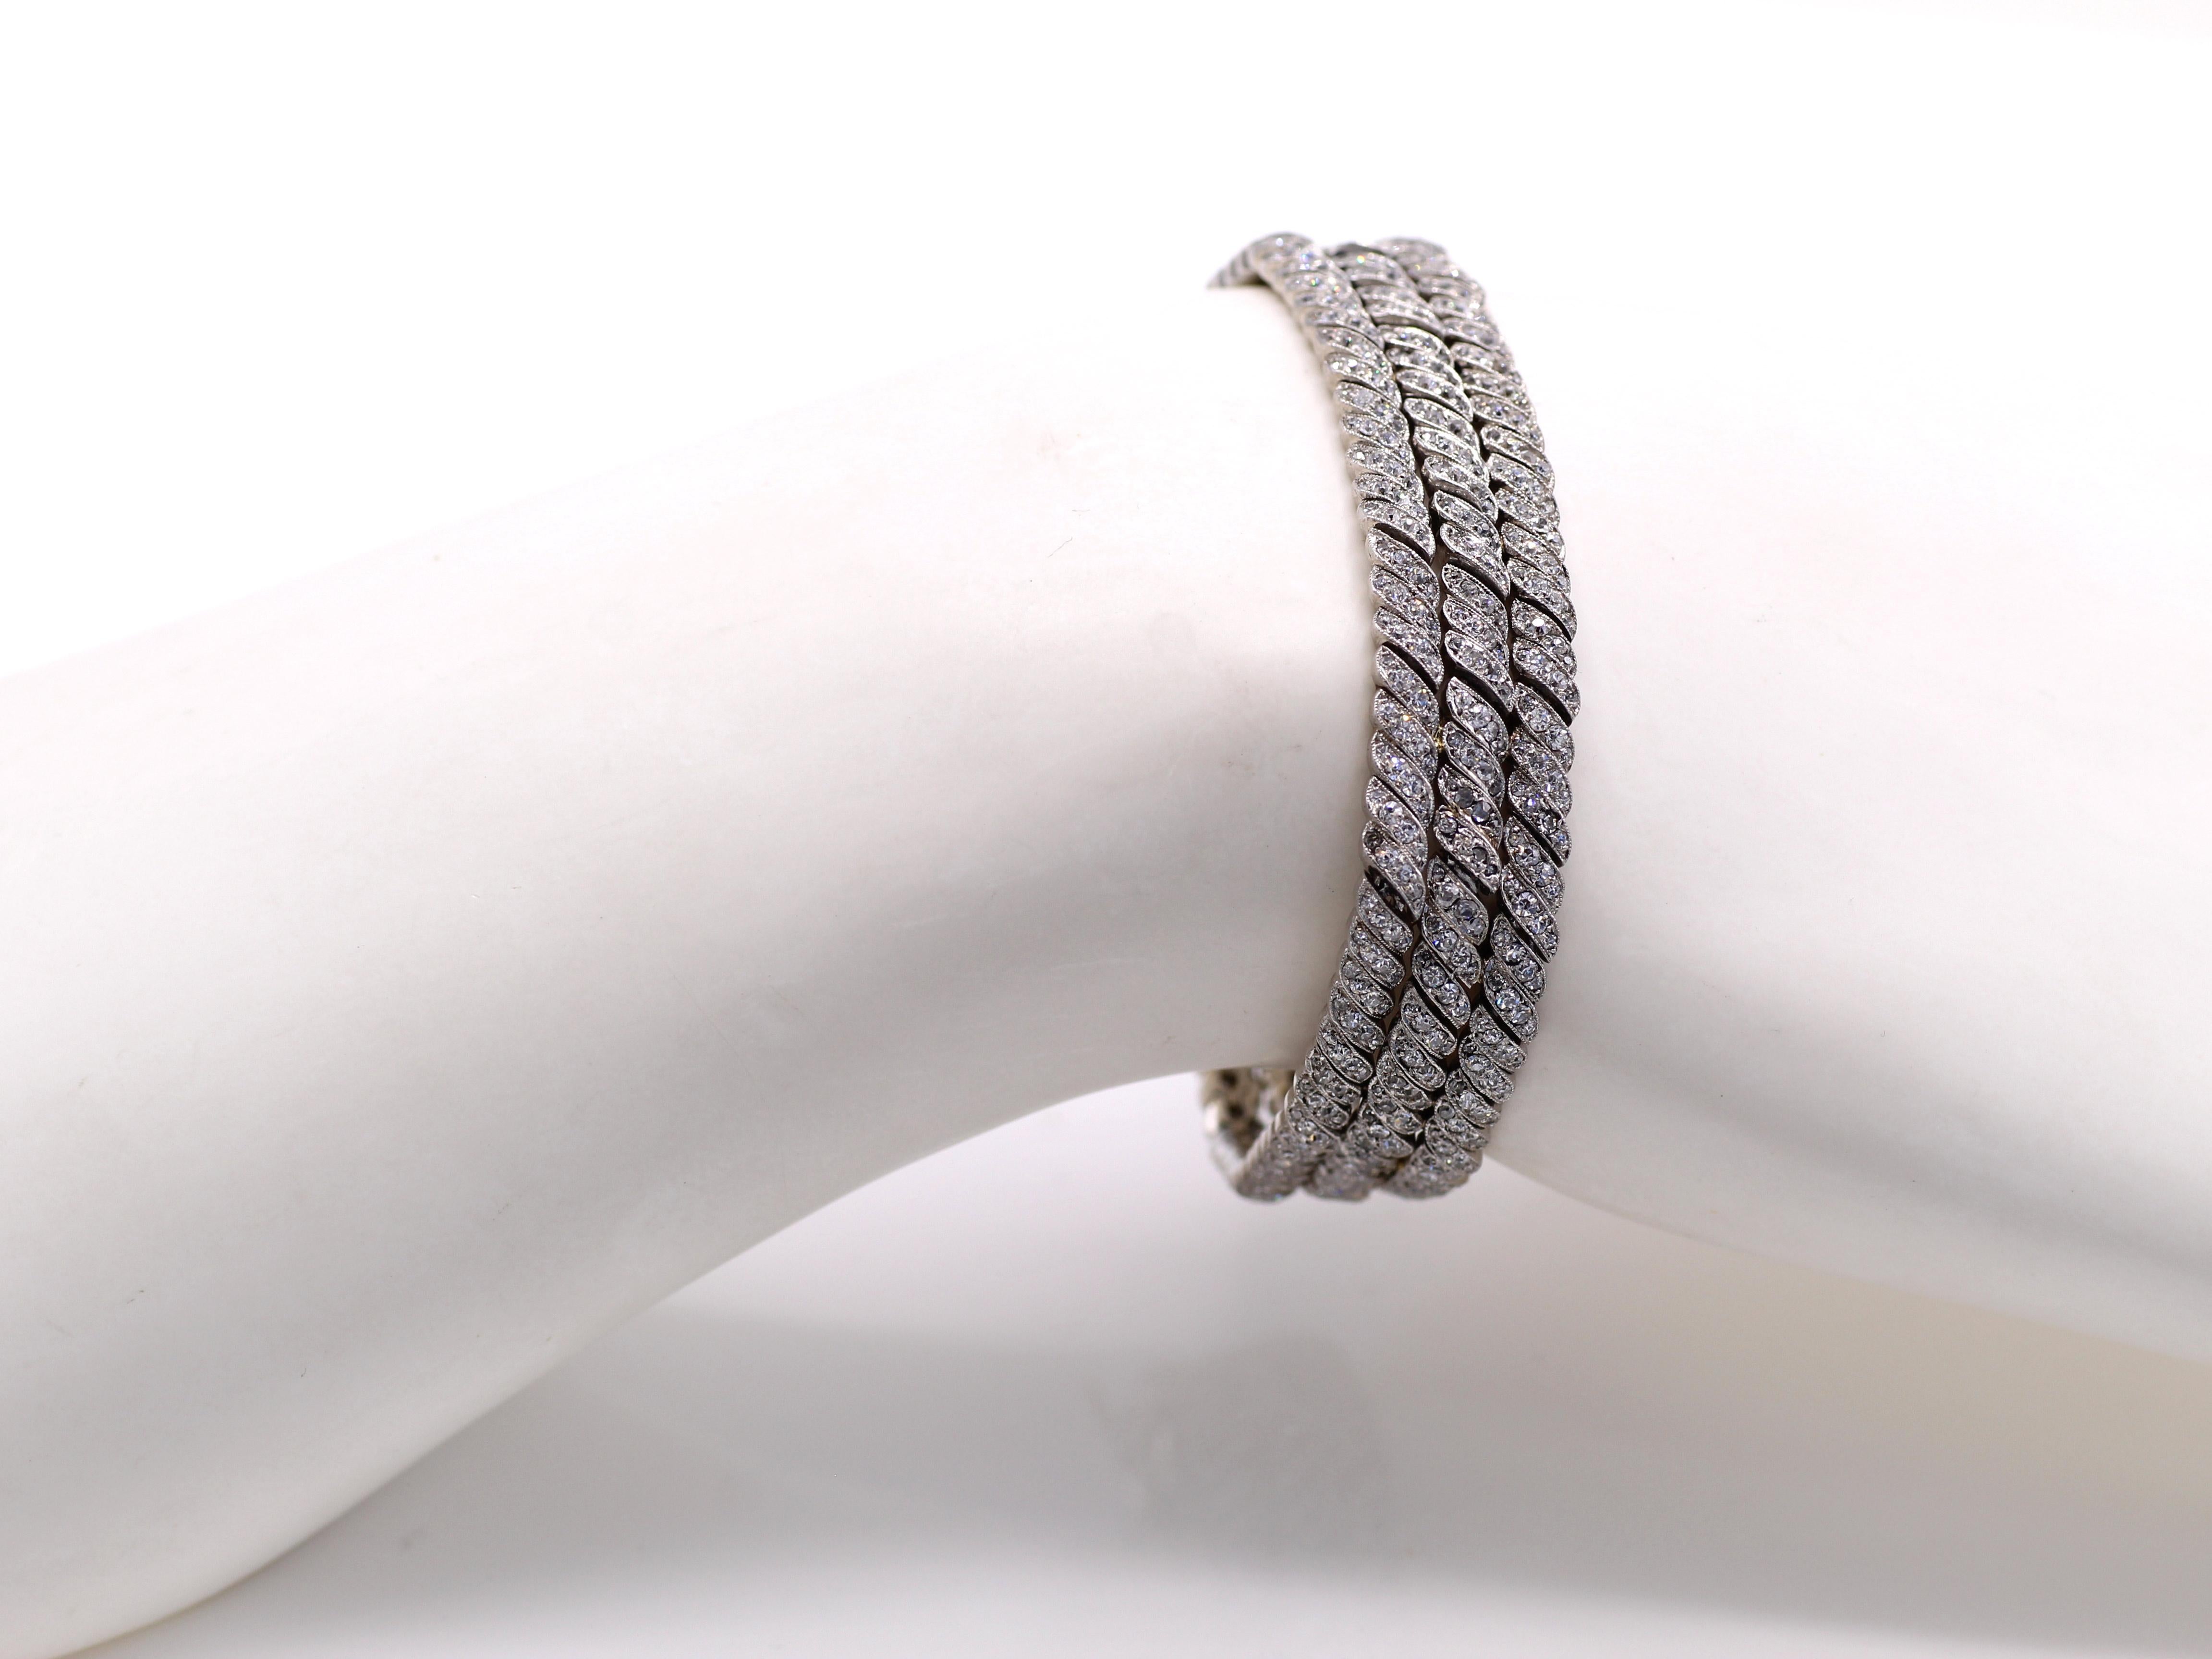 Dieses wunderschön gestaltete und meisterhaft handgefertigte französische edwardianische Armband von ca. 1915 besteht aus 201 flexiblen Elementen in Muschelform, die jeweils mit 4 kleinen runden Diamanten im Altschliff besetzt sind. Das Armband ist